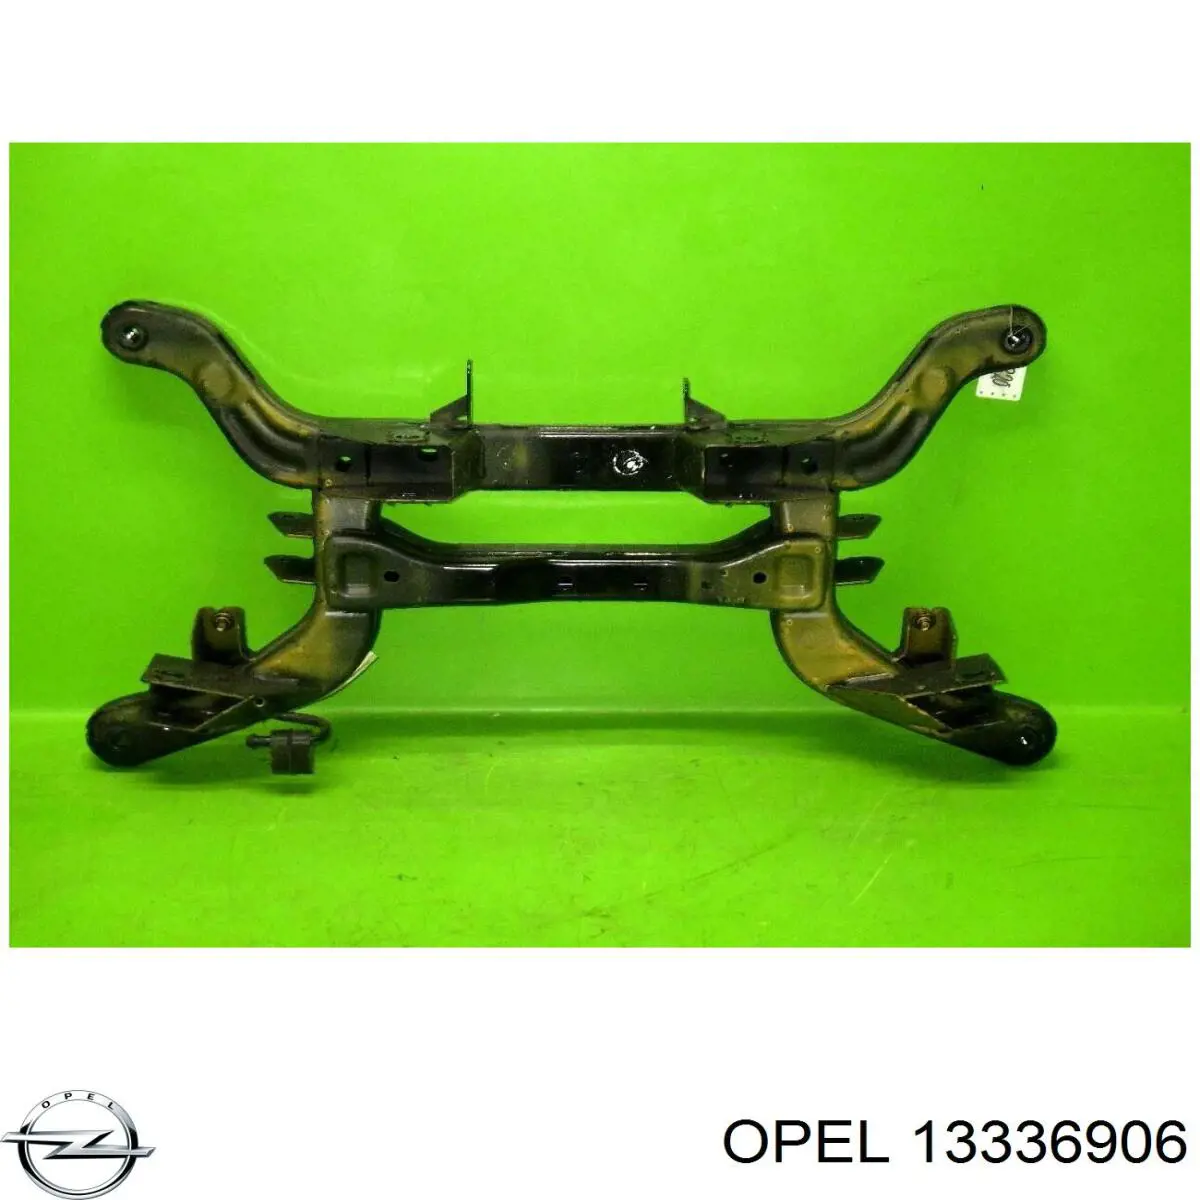 13336906 Opel viga de suspensão traseira (plataforma veicular)